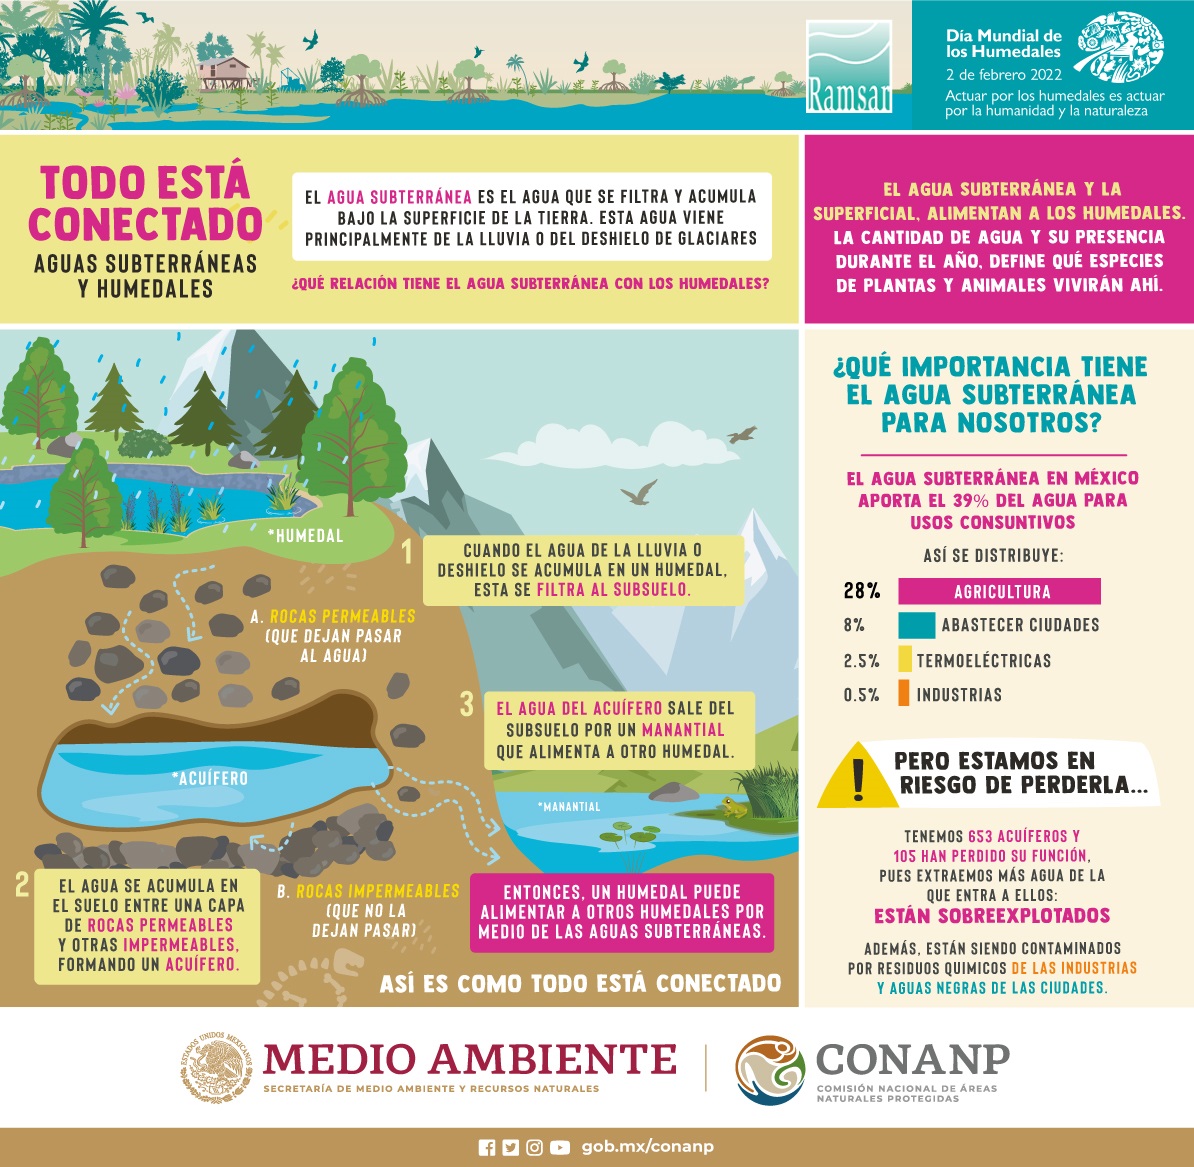 Todo esta conectado: Aguas Subterráneas y Humedales (Infografía)- CONANP